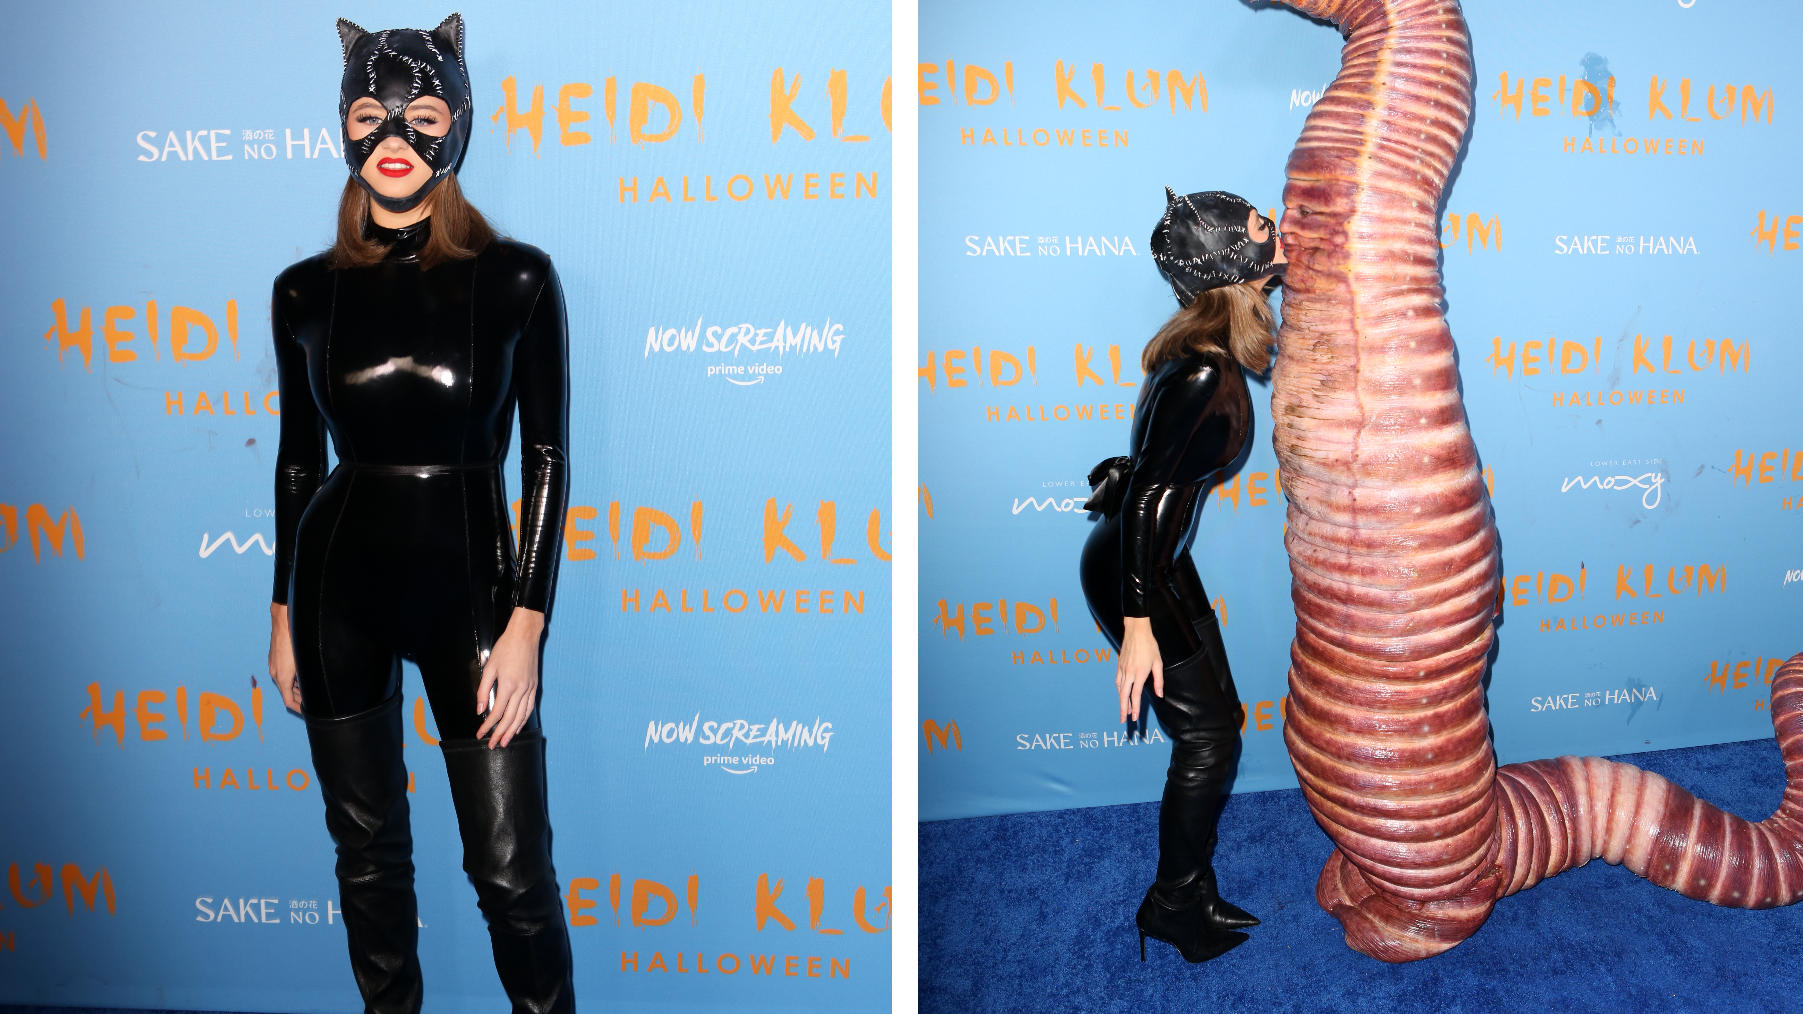 Leni und Heidi Klums Halloween-Looks könnten nicht unterschiedlicher sein.